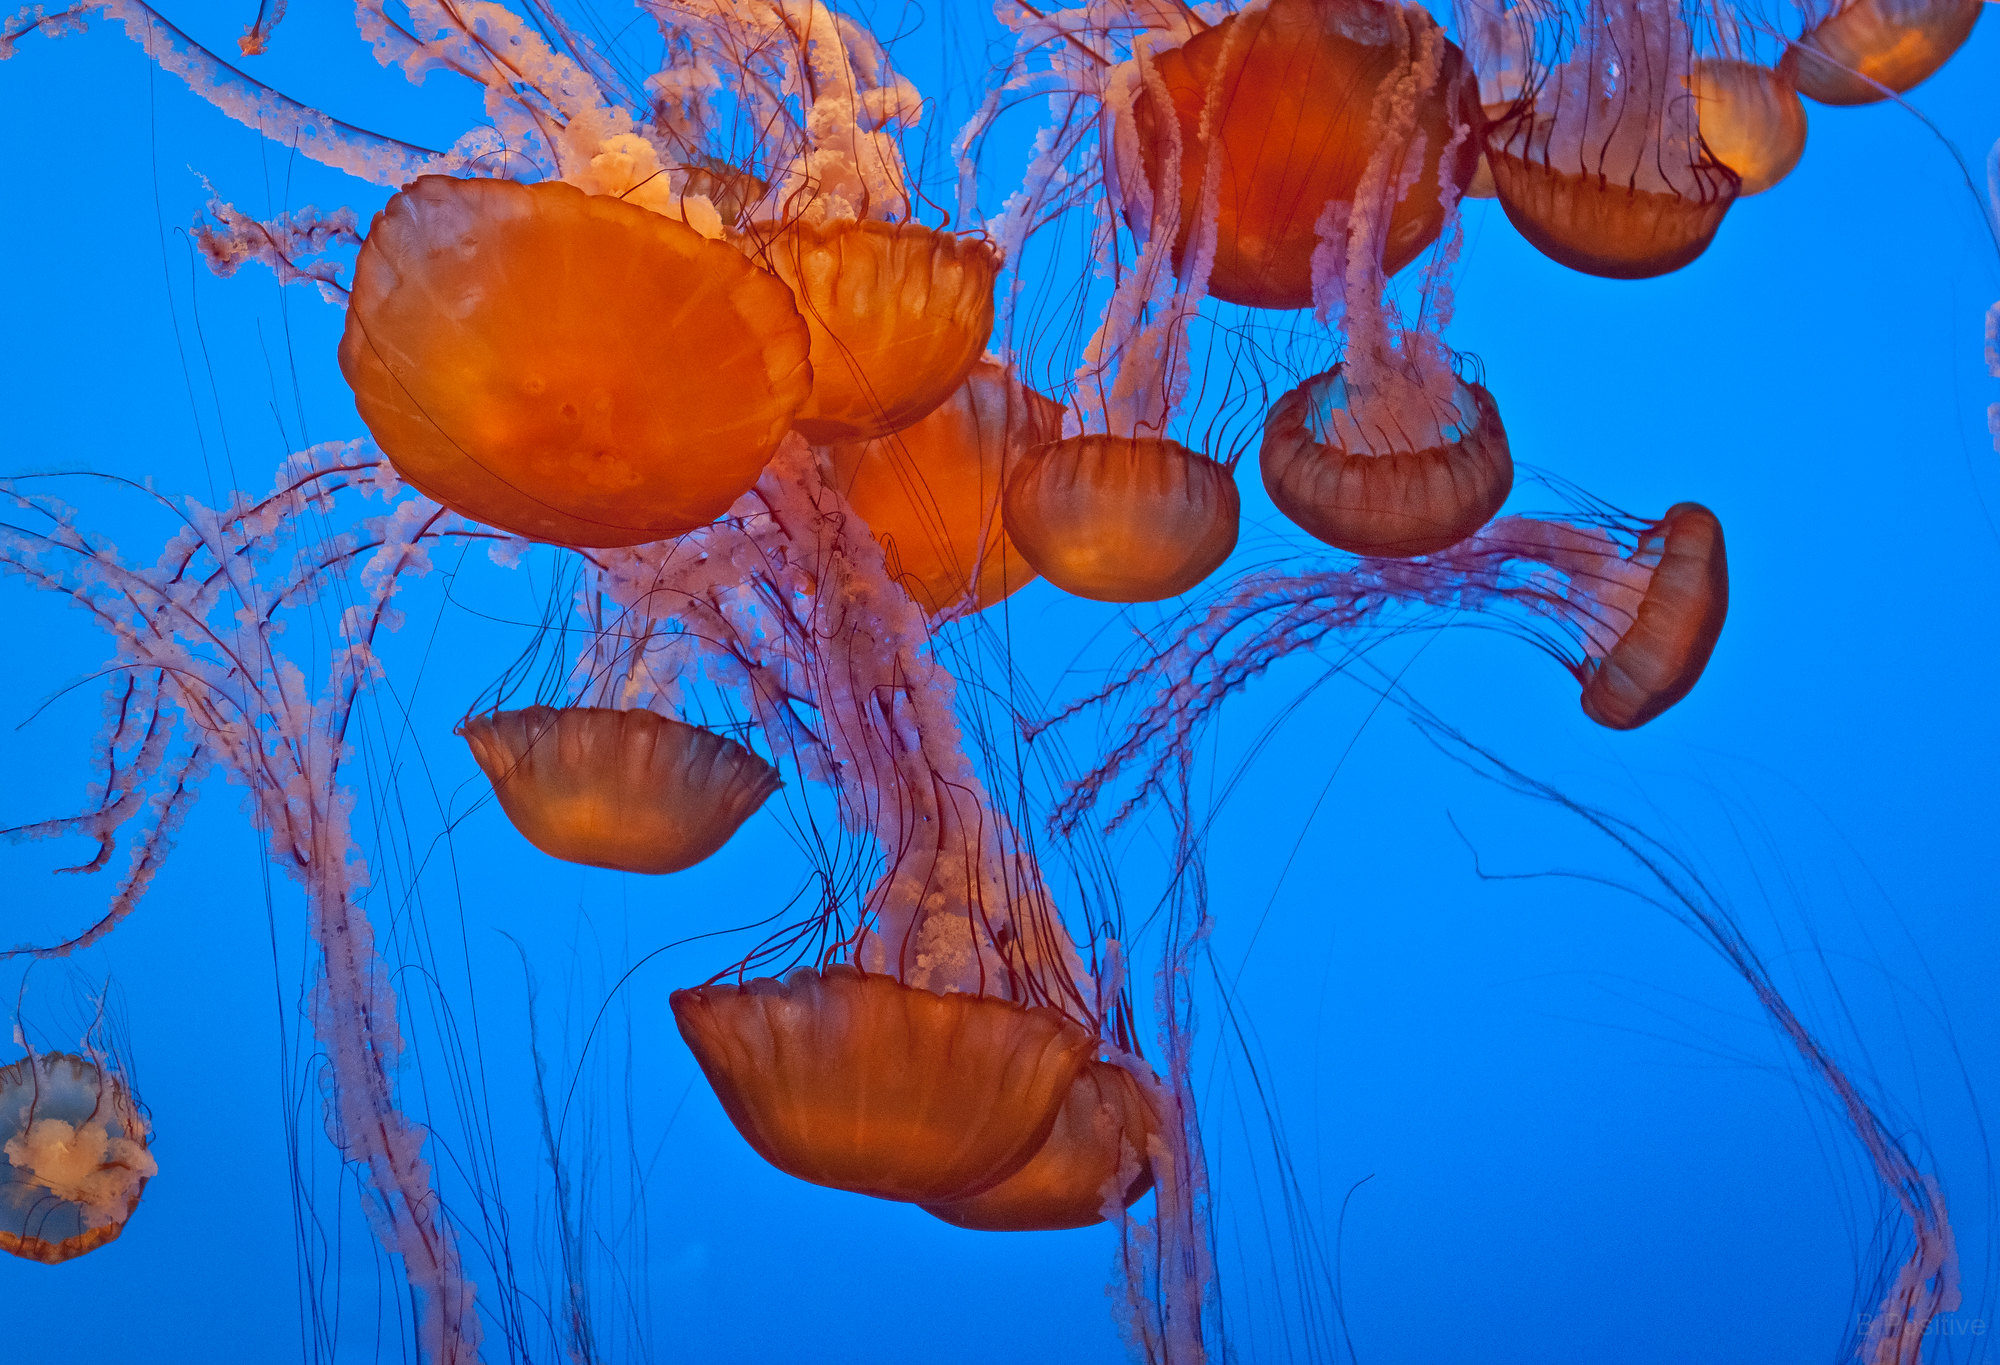 Jellyfish by r_kim